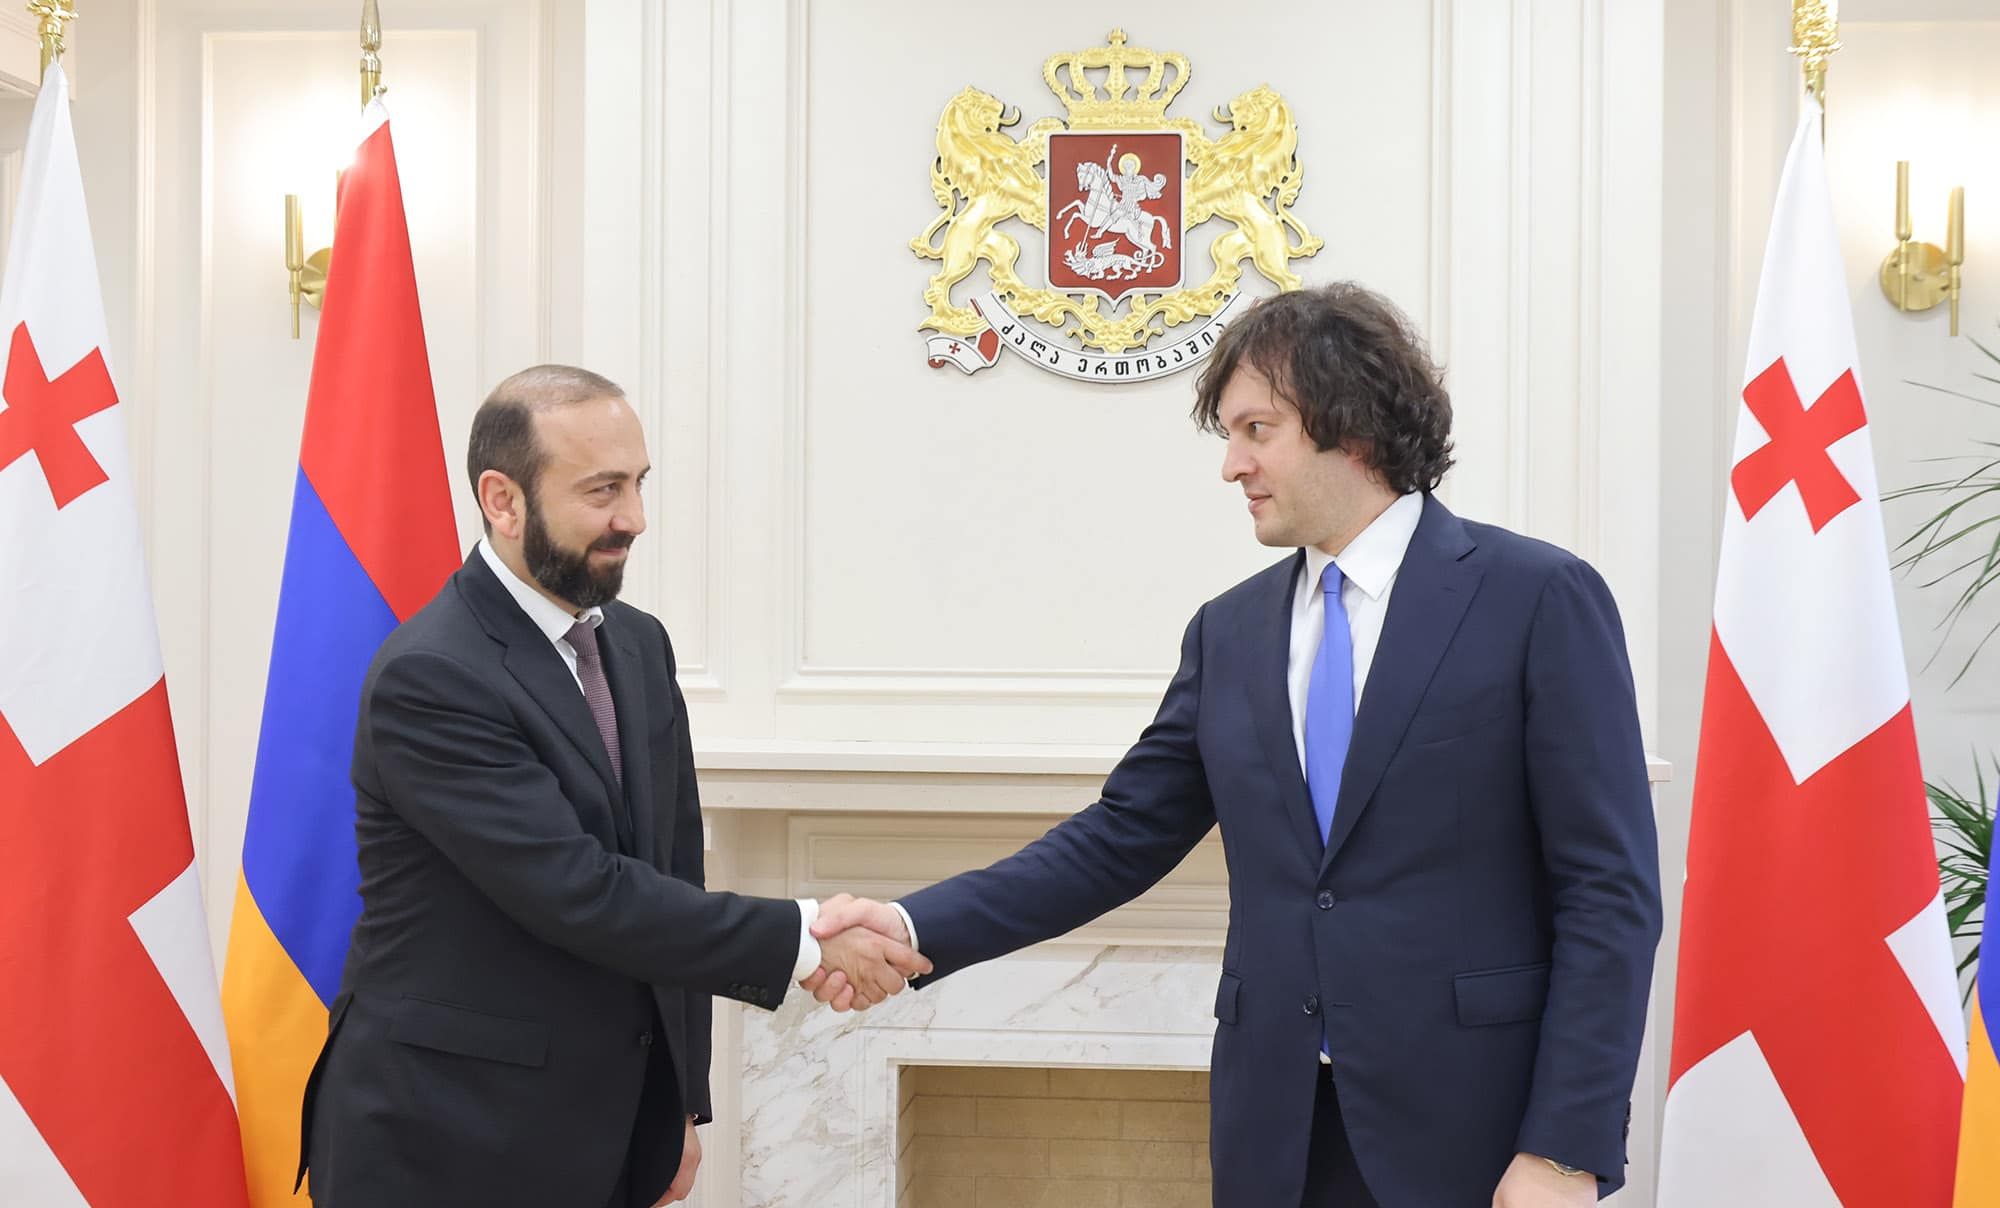 Глава МИД Армении и премьер-министр Грузии обсудили вопросы региональной безопасности